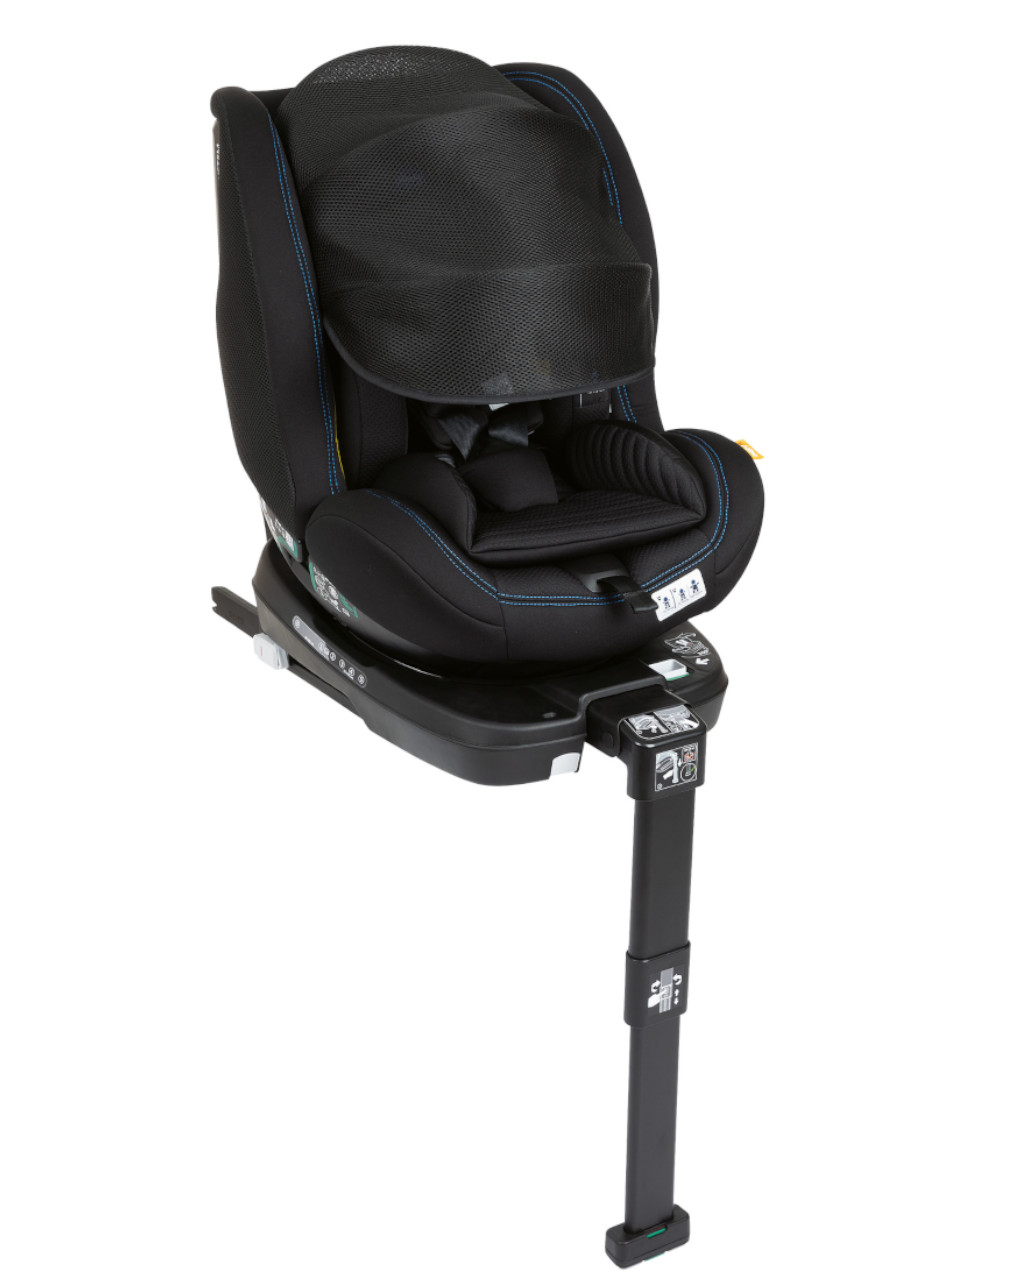 Silla para coche seat3 fit i-size black air 40-125 cm - chicco - Chicco